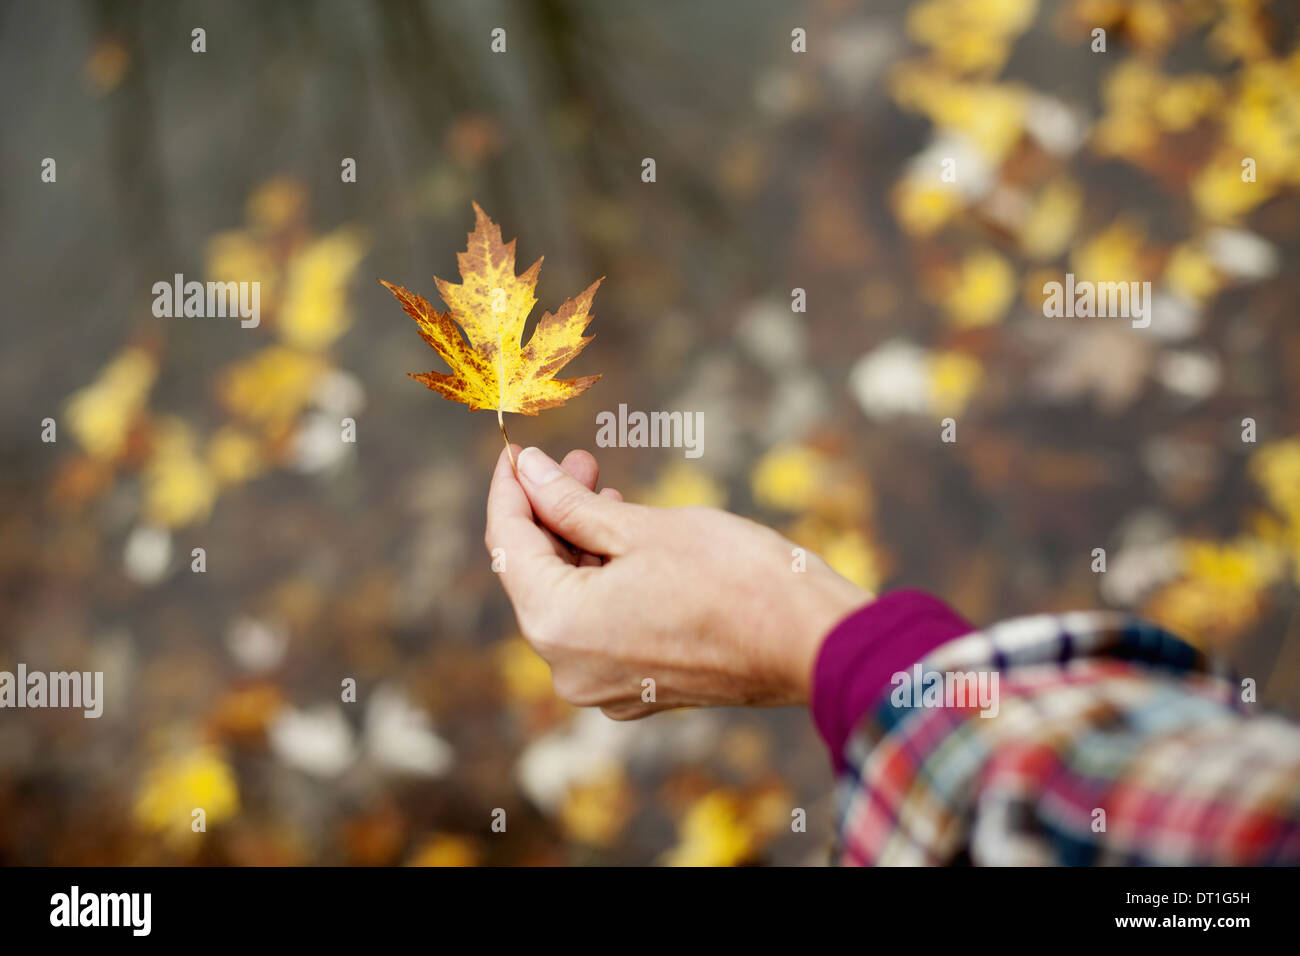 Une femme tenant une feuille d'automne une feuille d'érable de brunir Banque D'Images